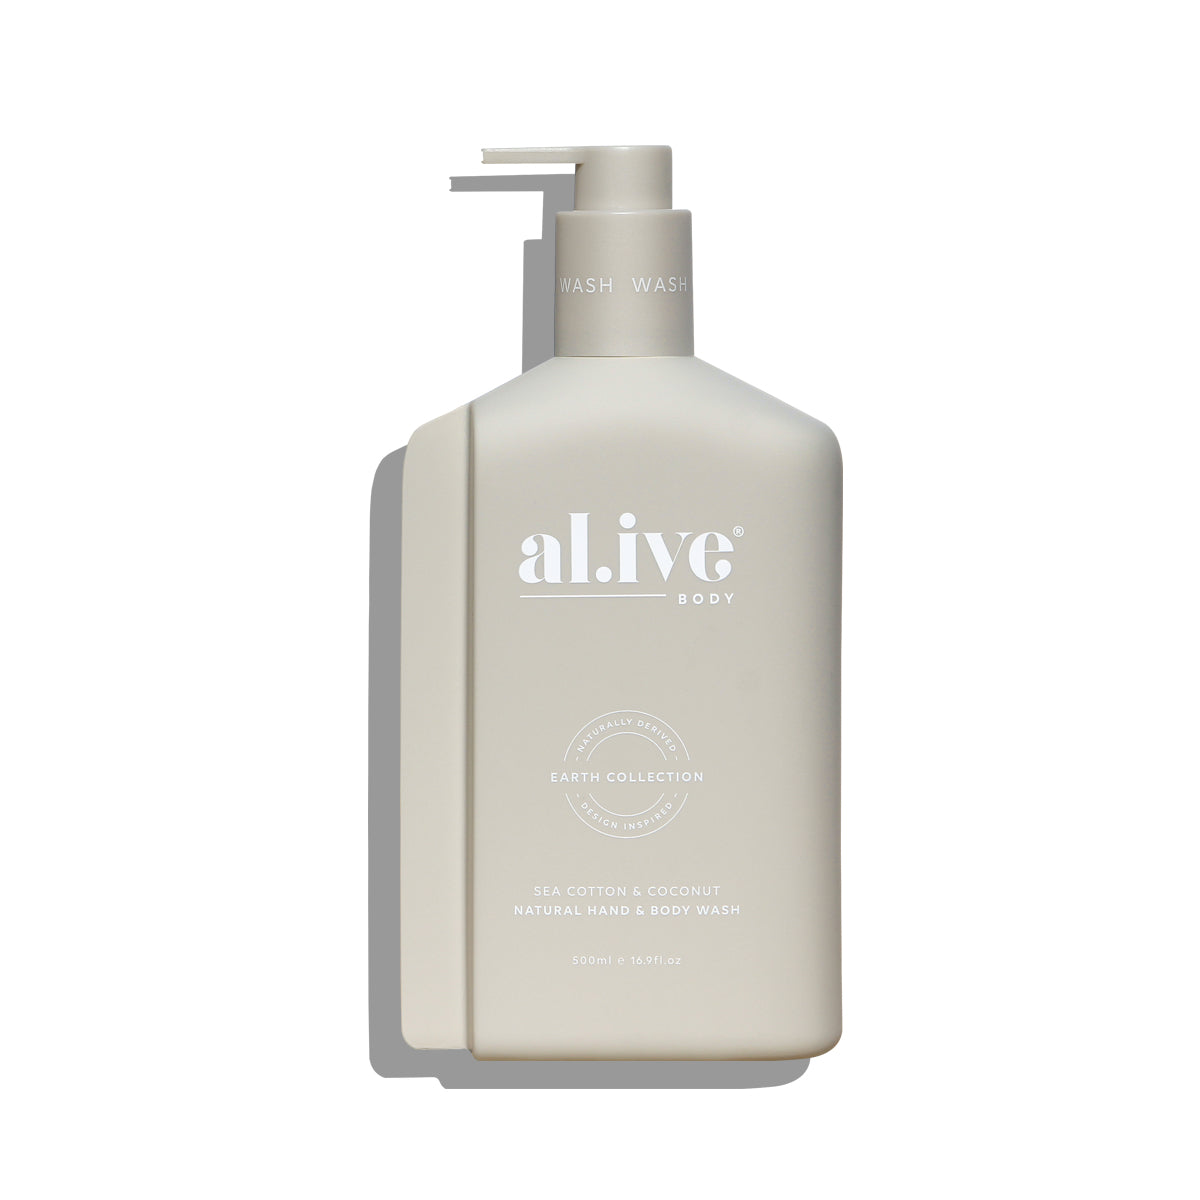 al.ive body - Sea Cotton & Coconut Hand & Body Wash